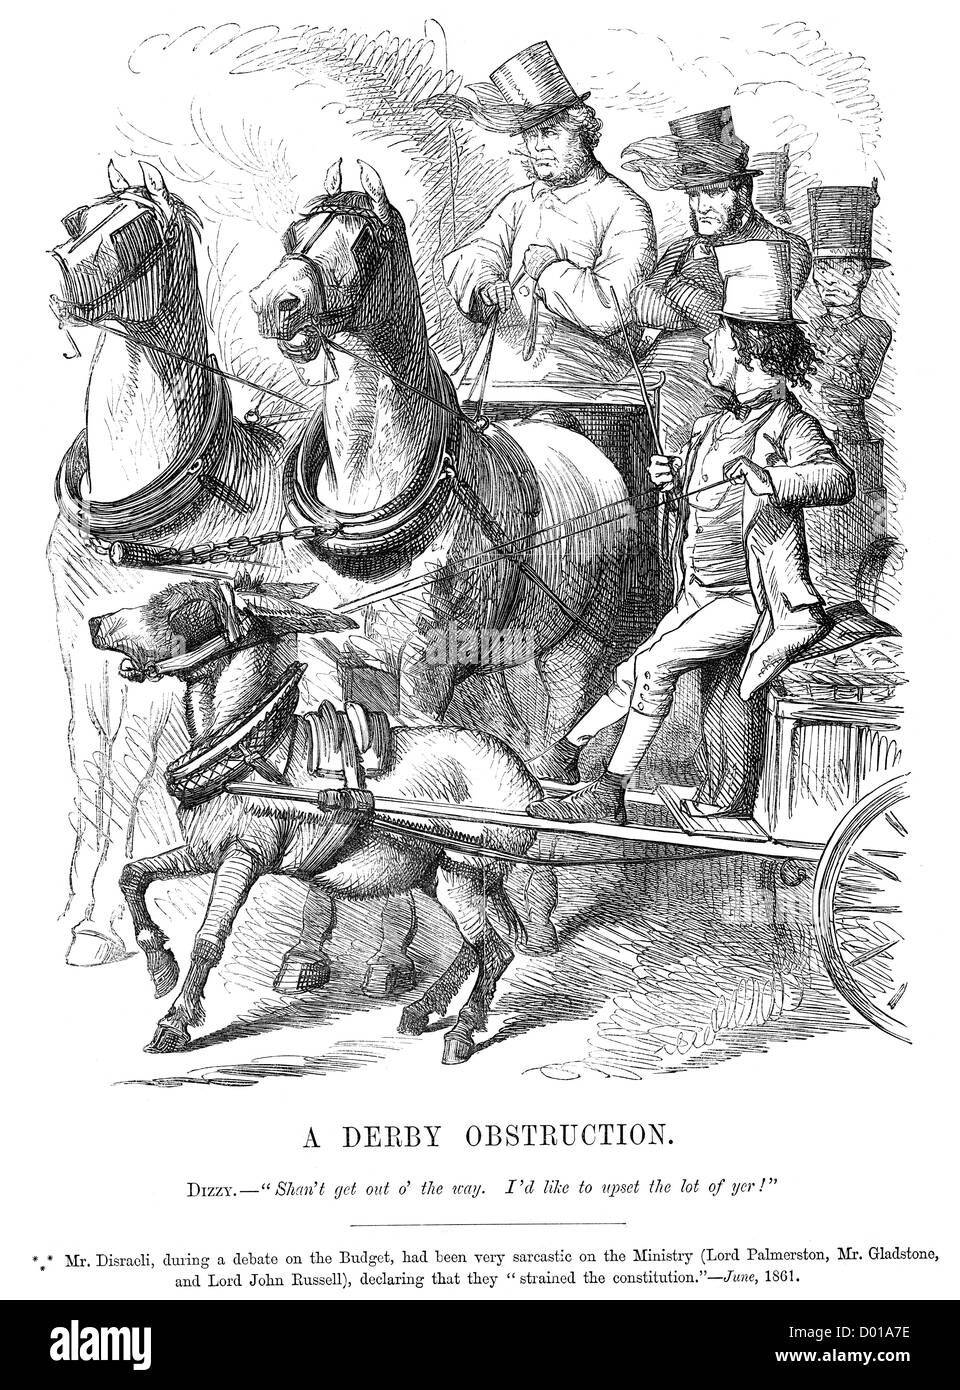 Derby-Obstruktion. Politische Karikatur über Angriff auf das Ministerium für Palmerston Disraeli, Gladstone und Lord John Russell Stockfoto